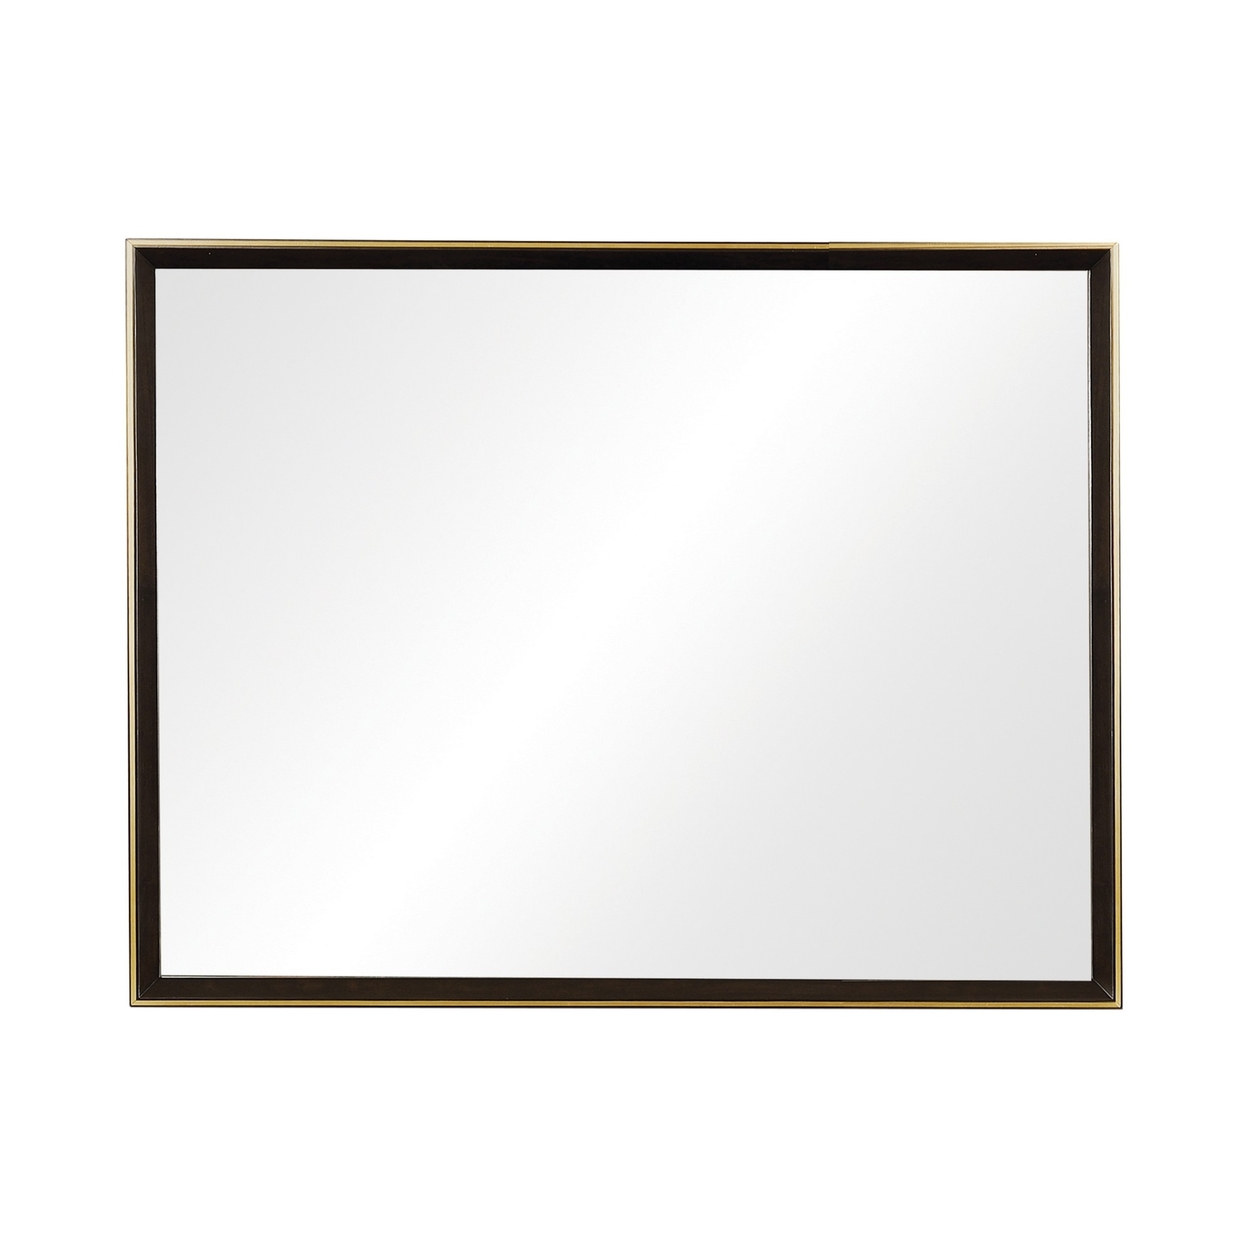 Rectangular Wooden Frame Mirror With Gold Trim, Espresso Brown- Saltoro Sherpi